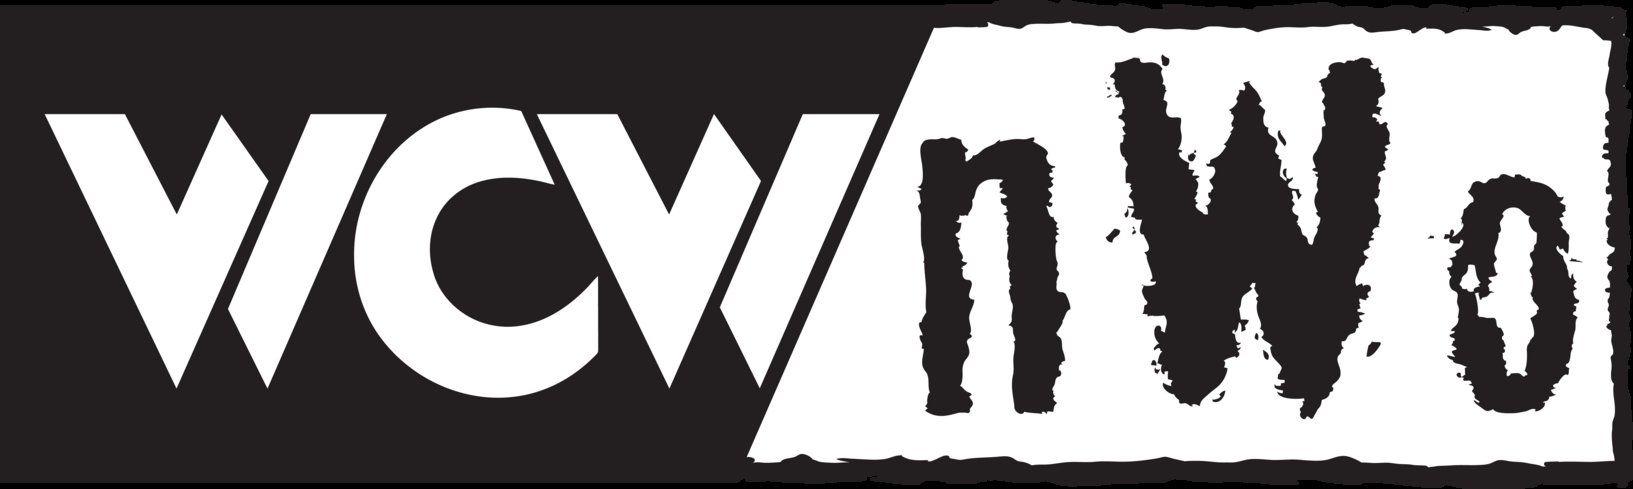 WCW Logo - WCW / nWo Logo